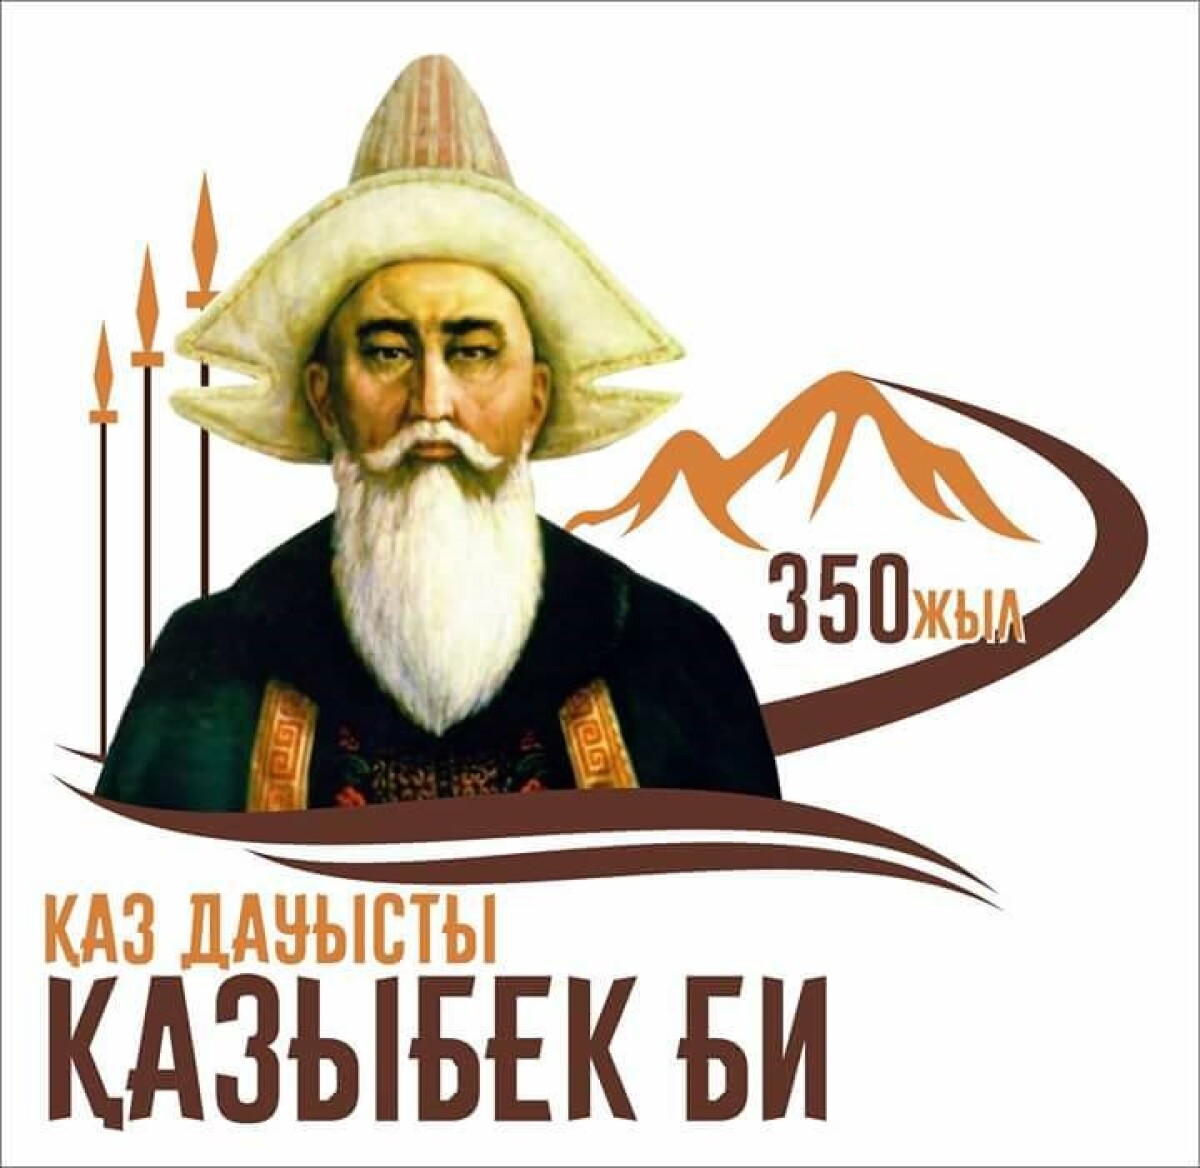 Казыбек би - потомок золотоордынских князей! - e-history.kz